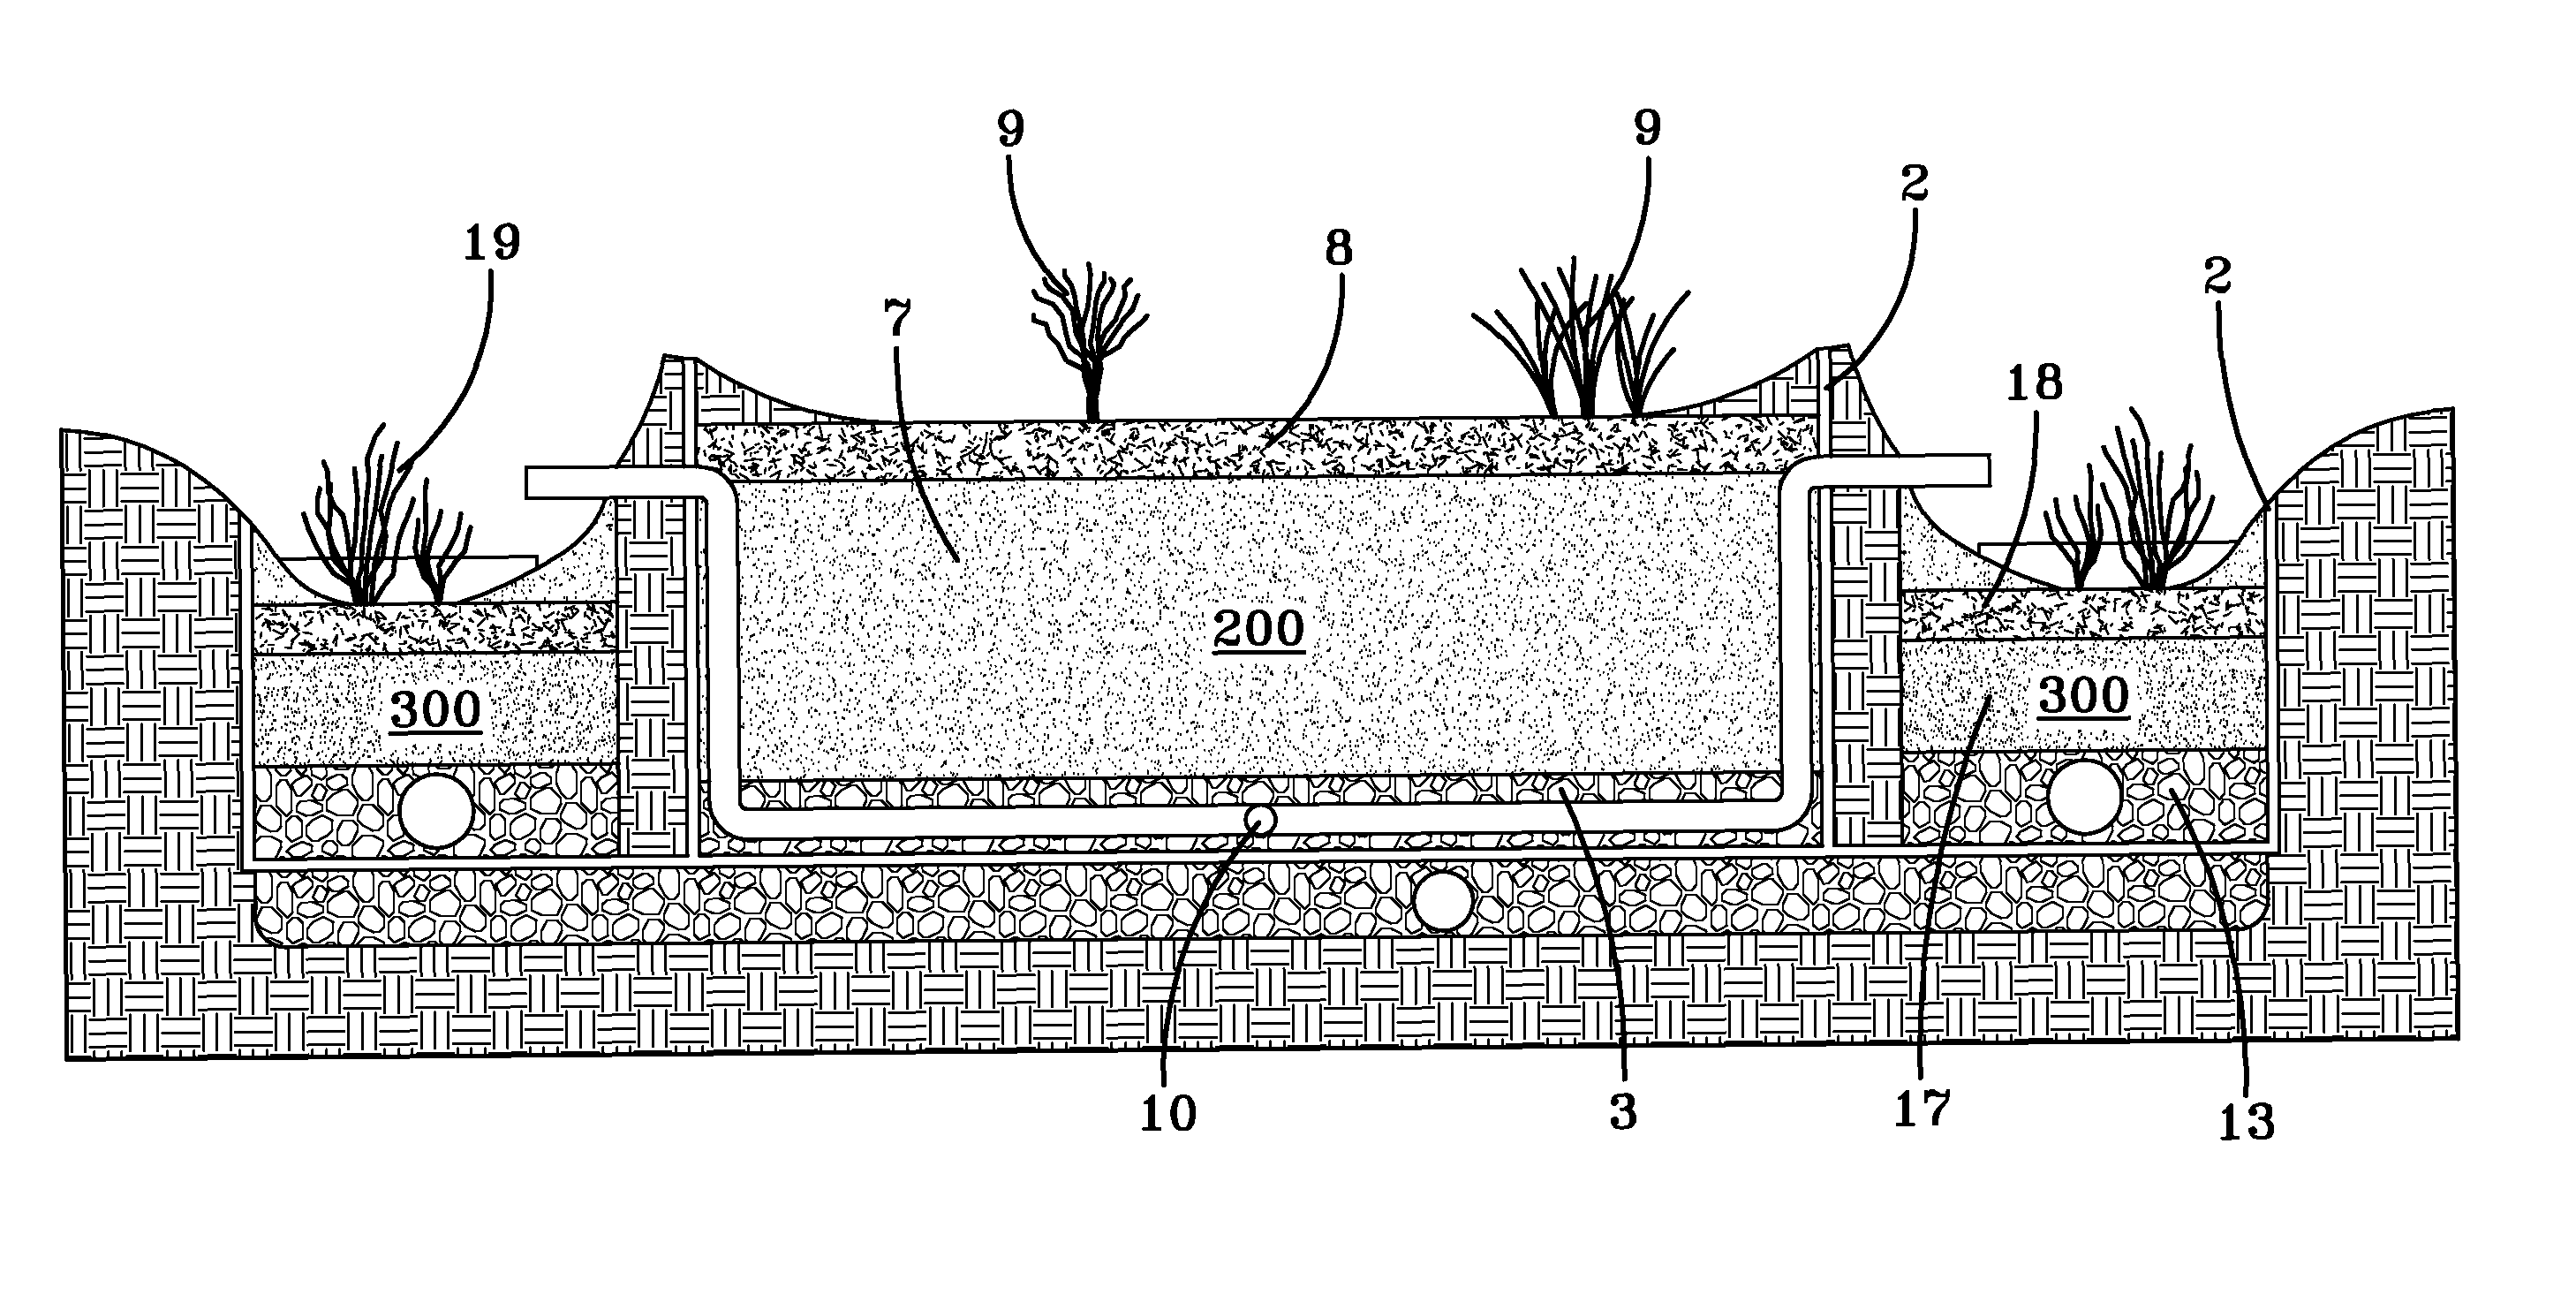 Bi-phasic bioretention system